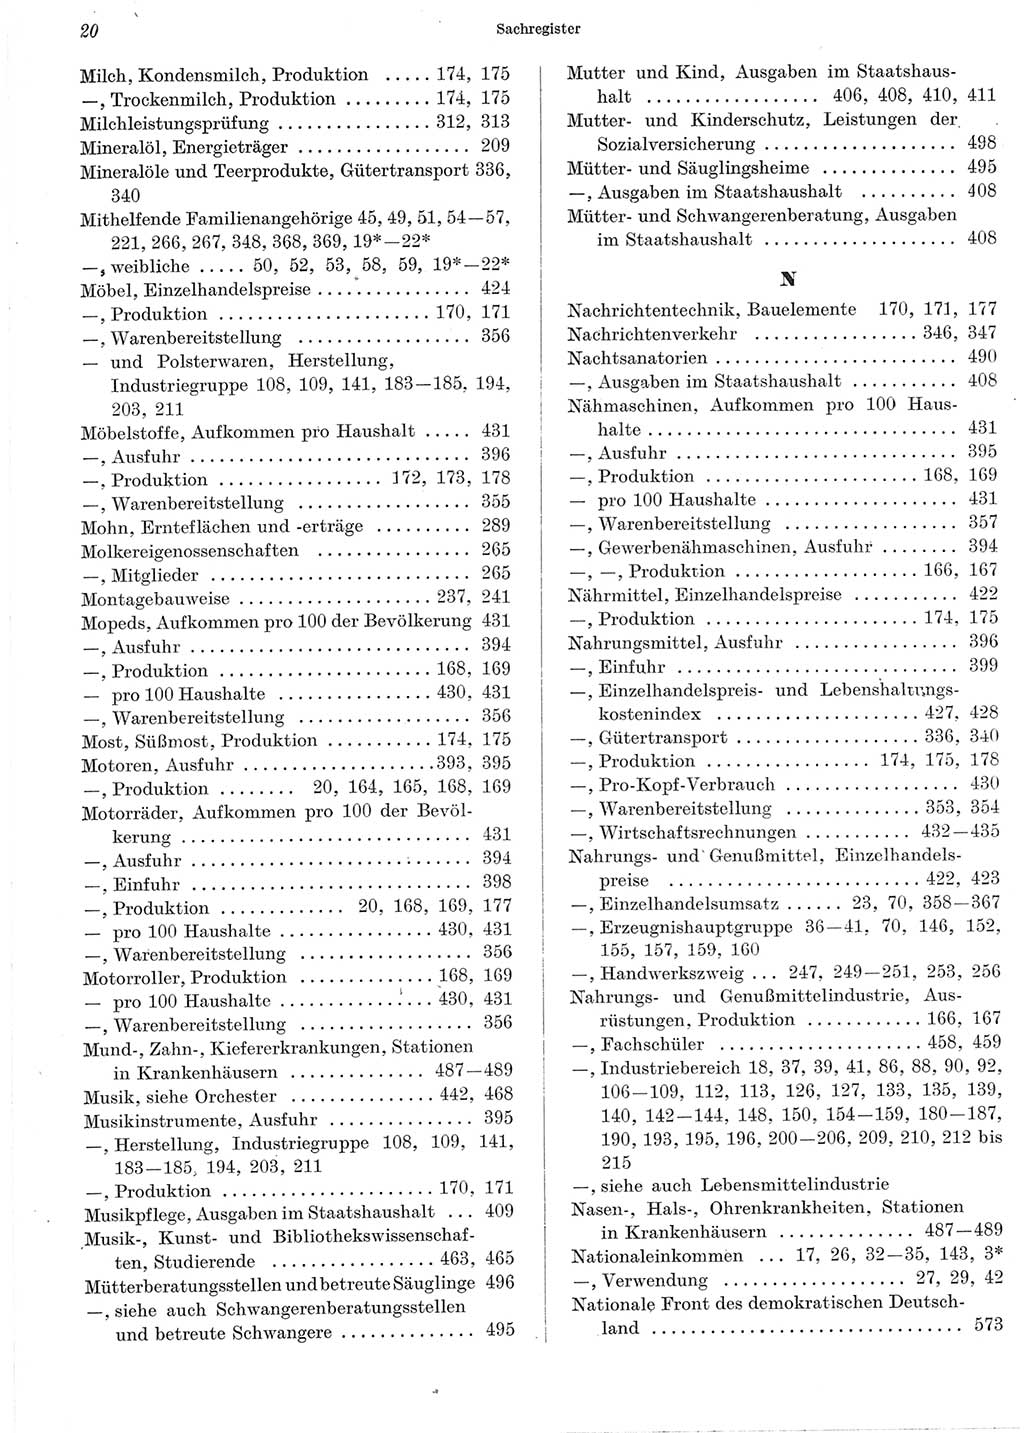 Statistisches Jahrbuch der Deutschen Demokratischen Republik (DDR) 1965, Seite 20 (Stat. Jb. DDR 1965, S. 20)